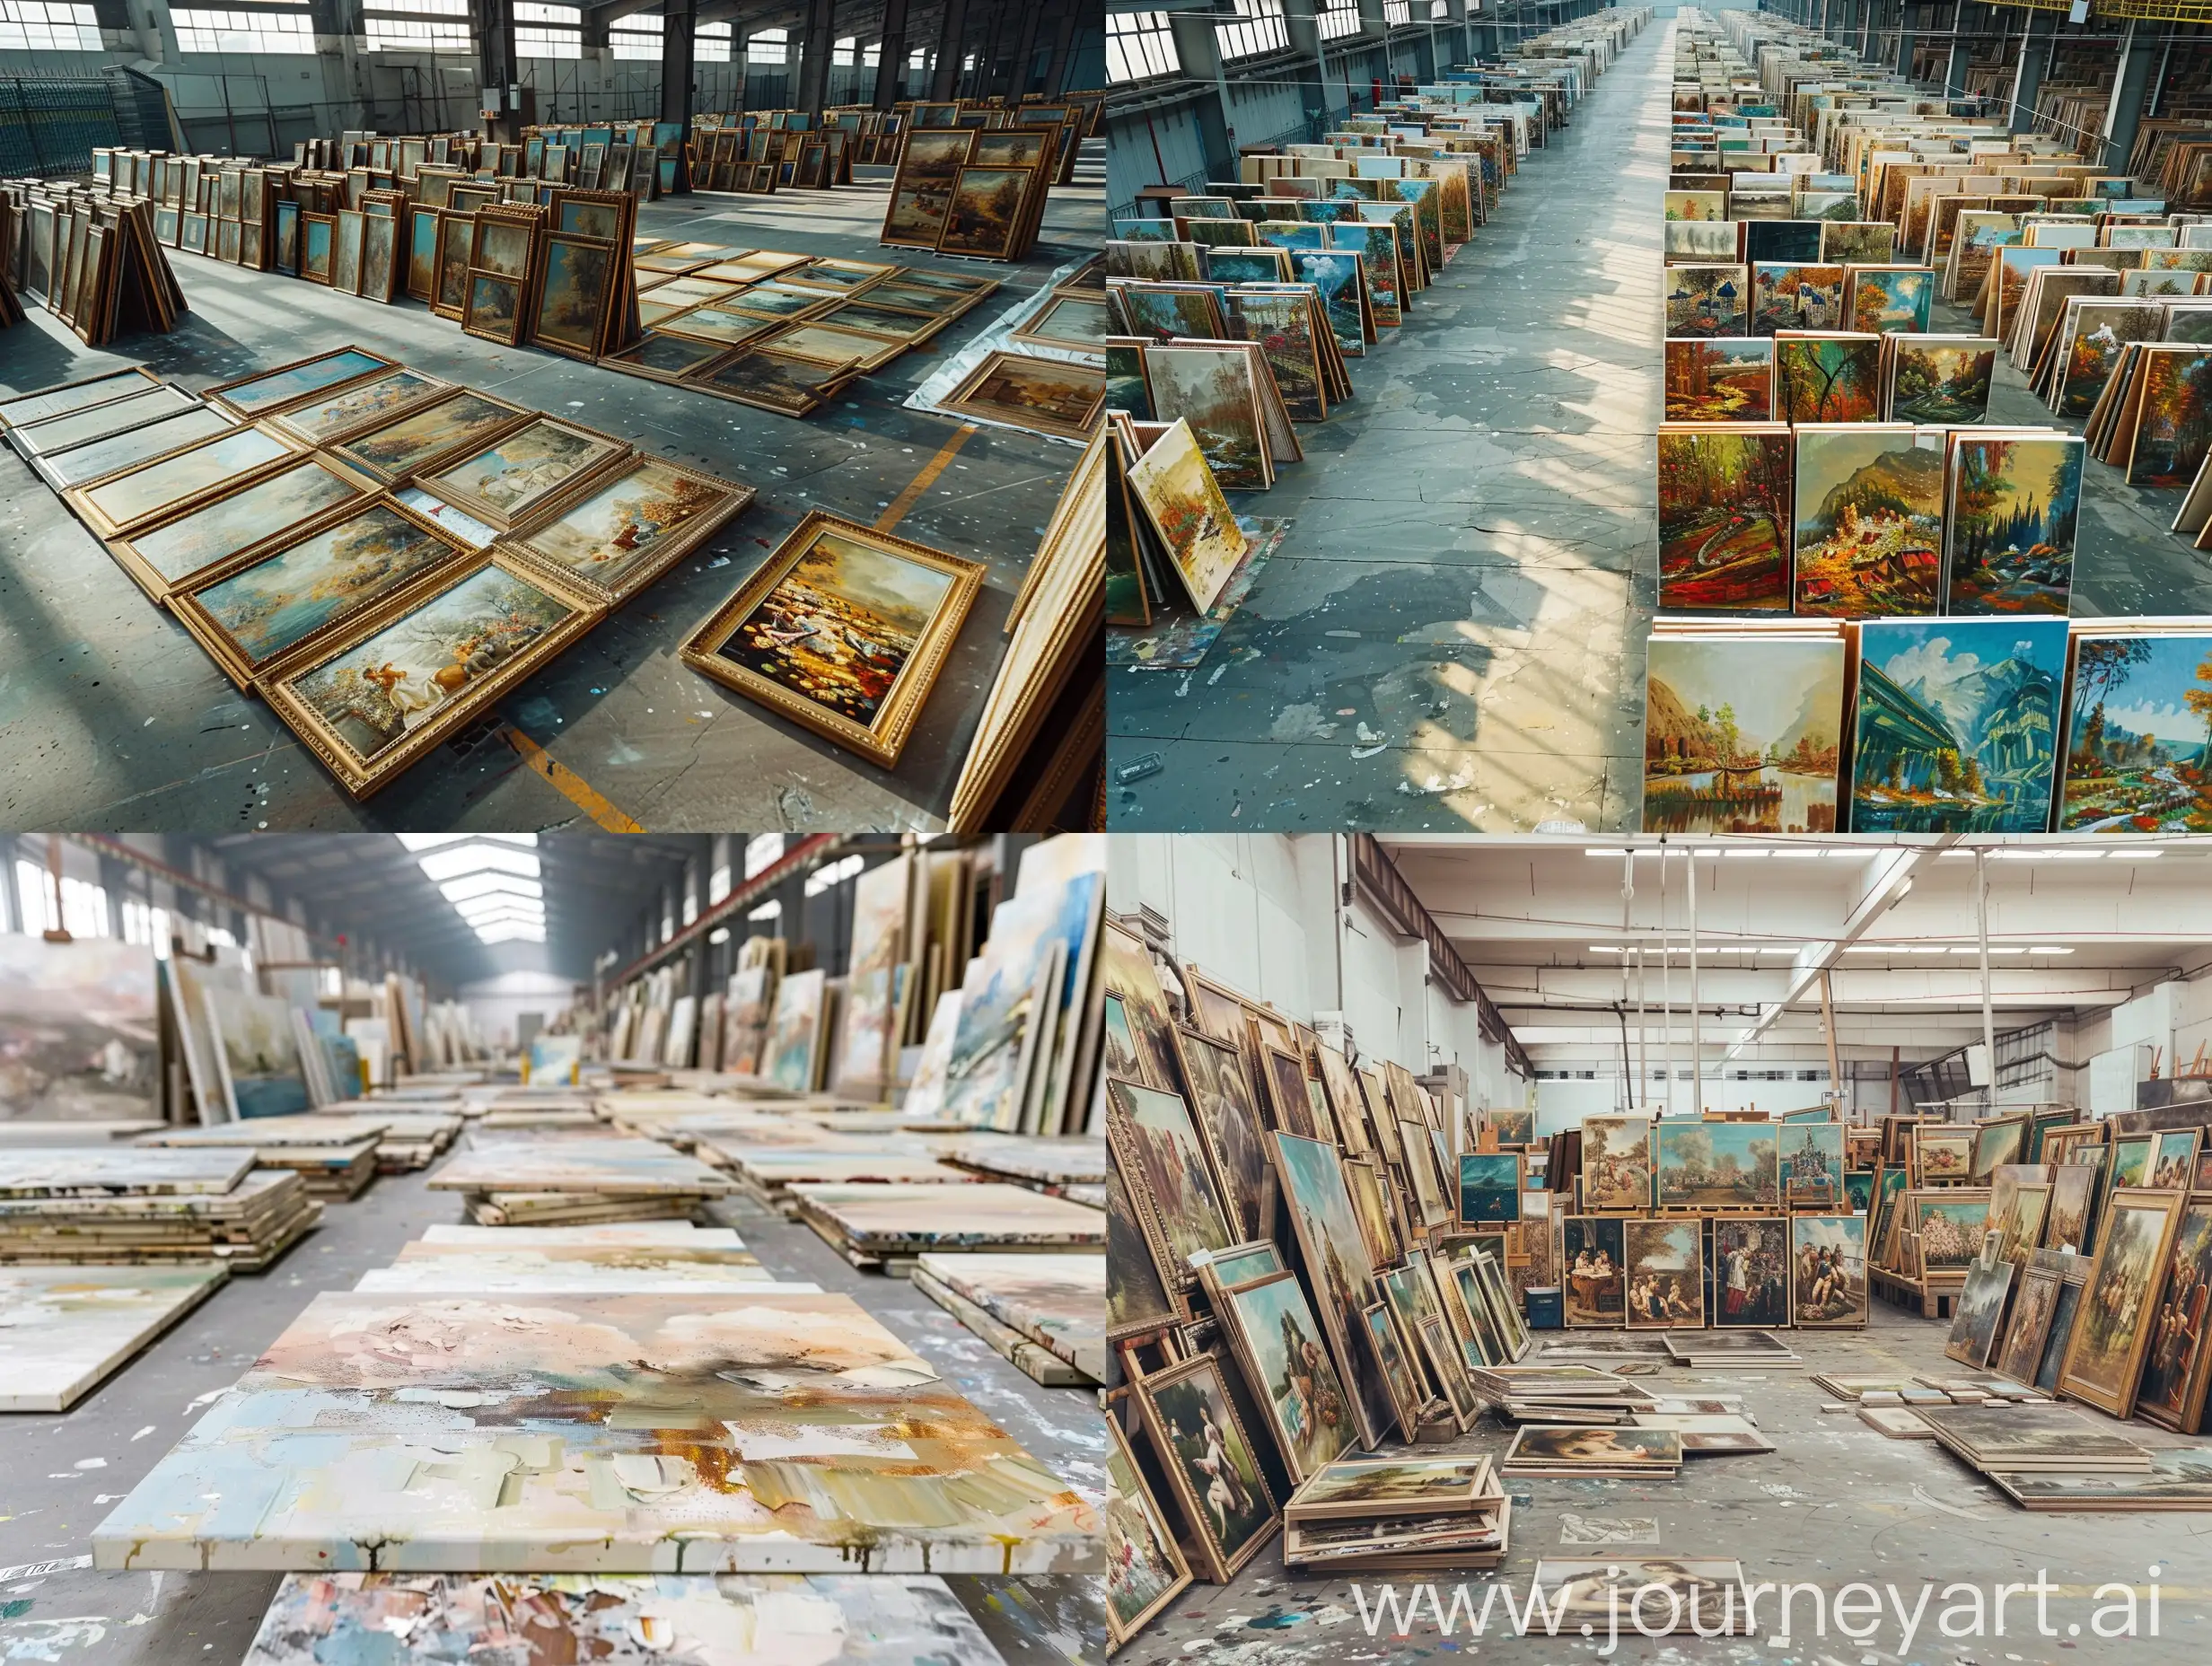 超大型油画工厂里成排整齐摆放了近千幅油画作品 、每幅油画的笔触质感和艺术感极强、工厂地面干净卫生 、工厂没人, ⾼清